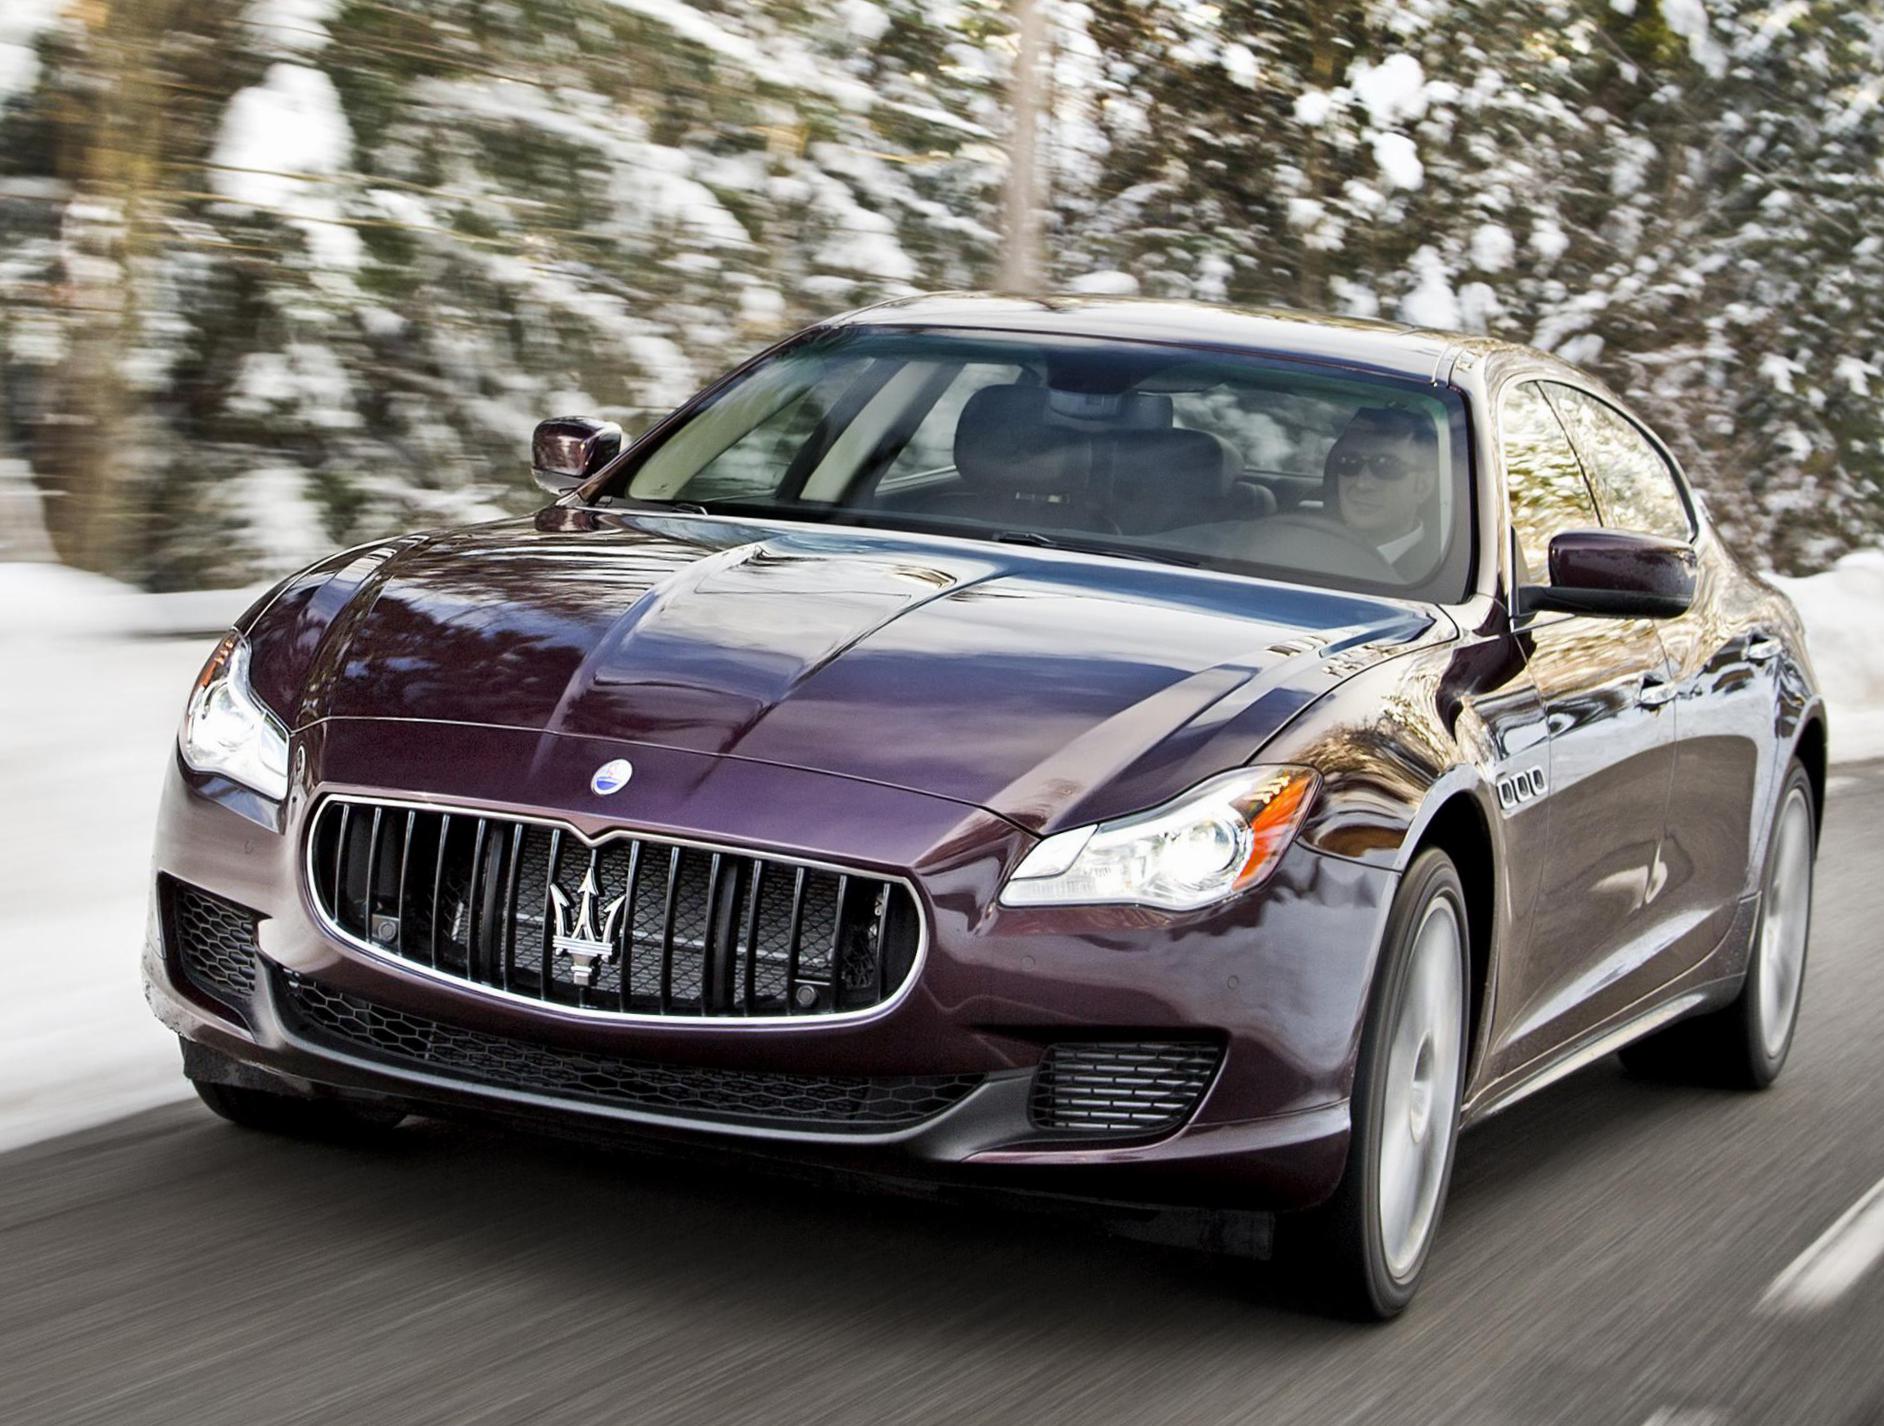 Quattroporte Maserati new 2015